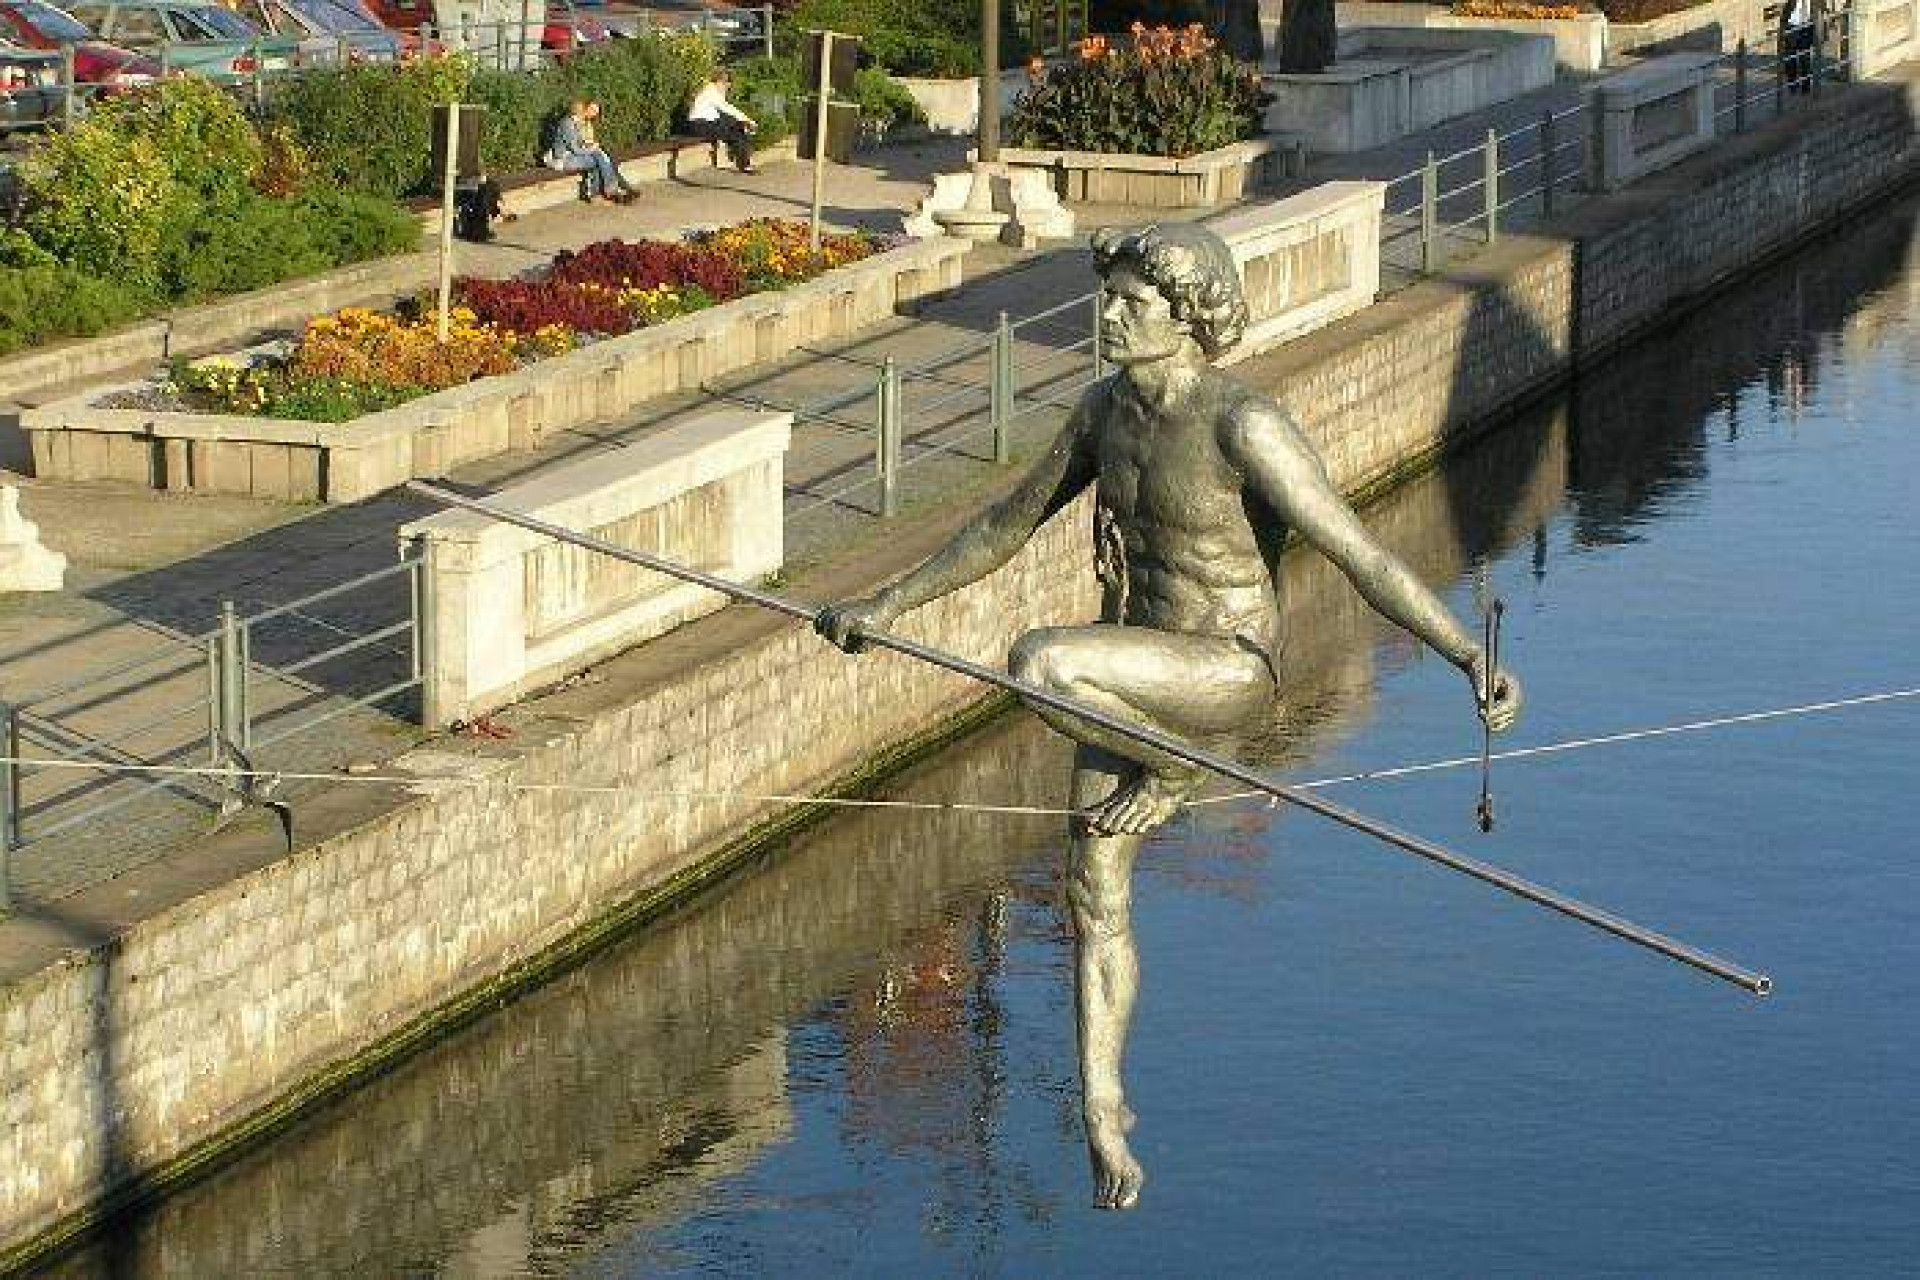 Pomnik Bydgoszczanina przechodzącego przez rzekę, Bydgoszcz, wikimedia.org/CC BY-SA 3.0